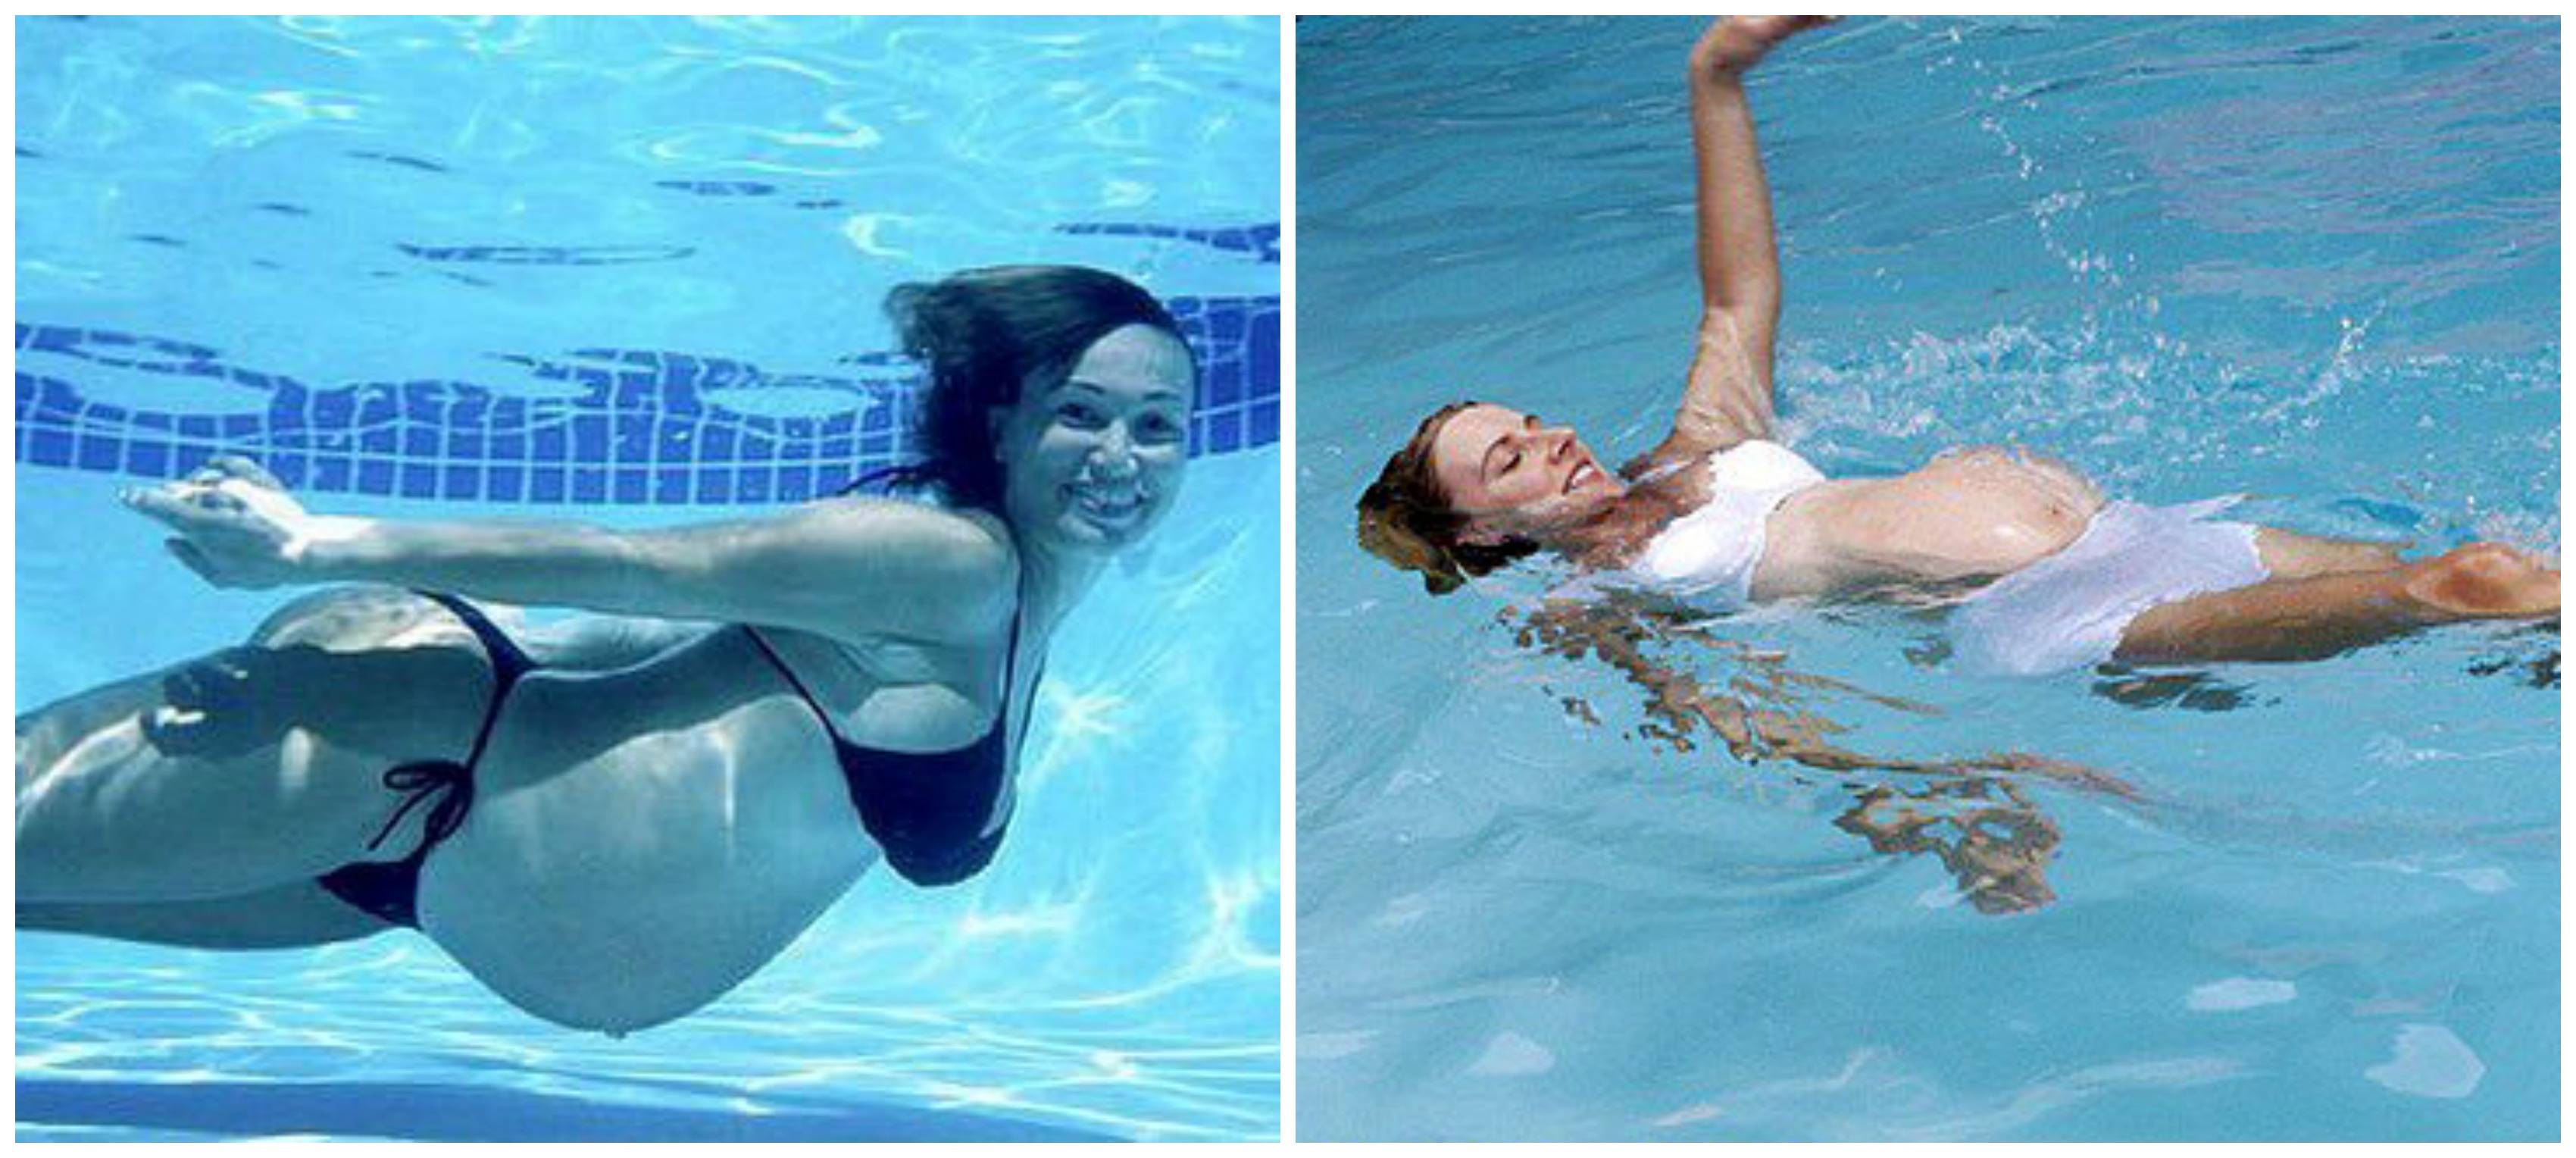 Во время месячных можно купаться в бассейне. Аквааэробика для беременных. Девушка купается в бассейне. Бассейн для беременных аквааэробика.